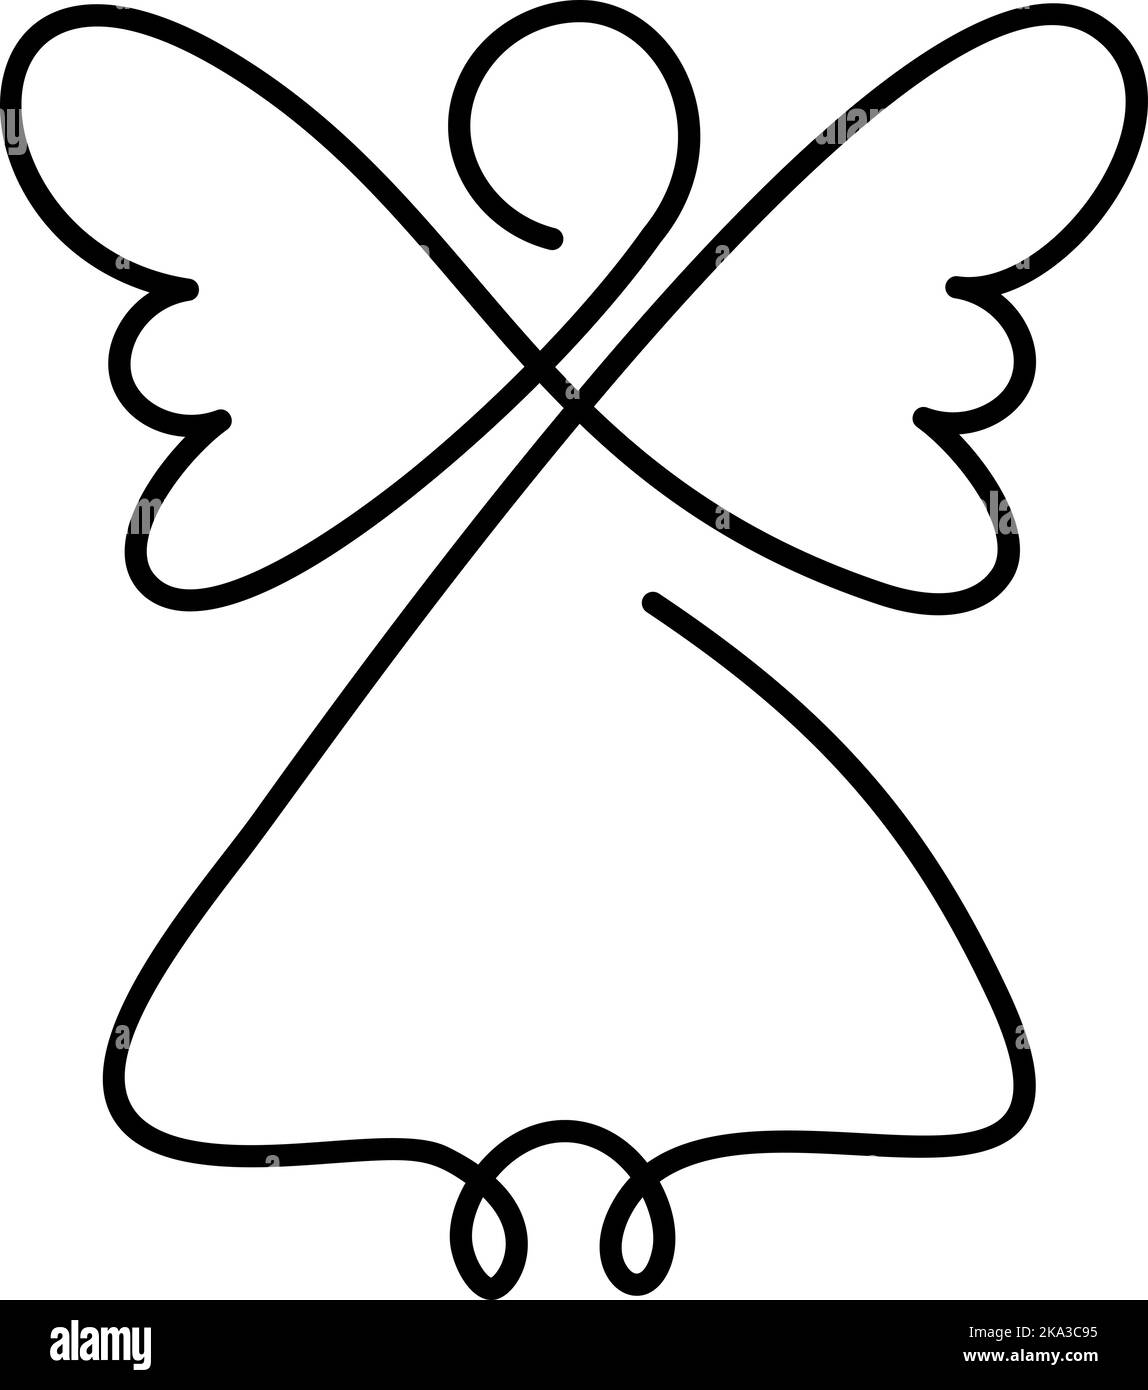 Einfacher Vektor Weihnachtsengel mit Flügeln, kontinuierliche Linienzeichnung, kleines Tattoo, Druck für Kleidung und Logo-Design, Emblem oder Silhouette ein einziges Stock Vektor